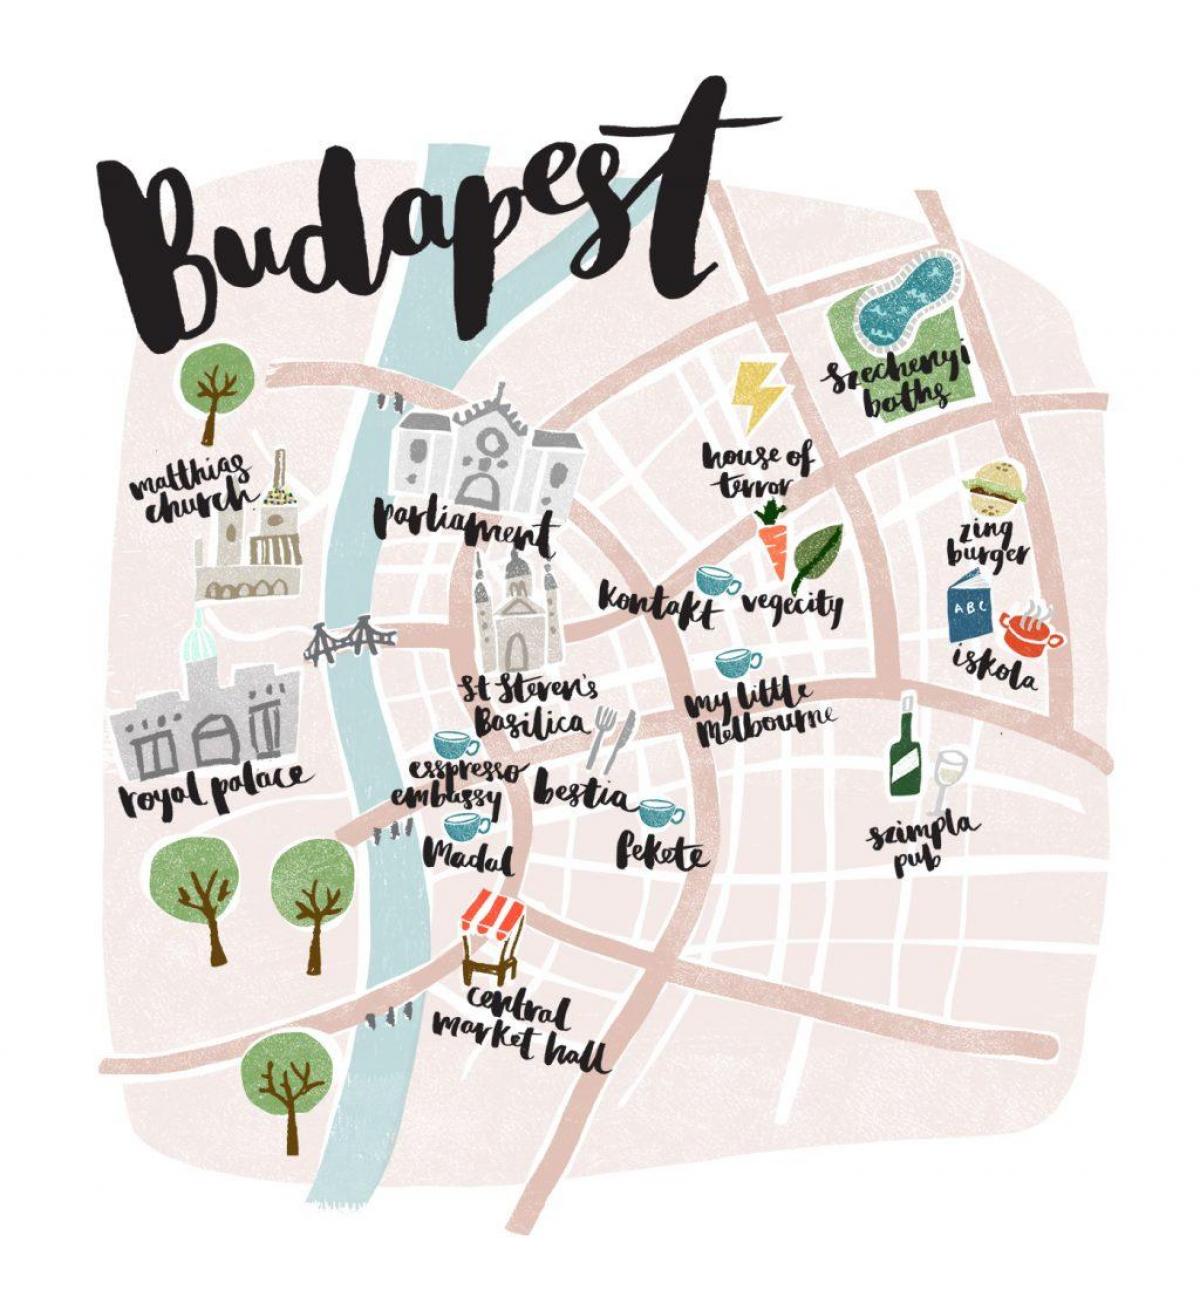 خريطة بودابست حاليا